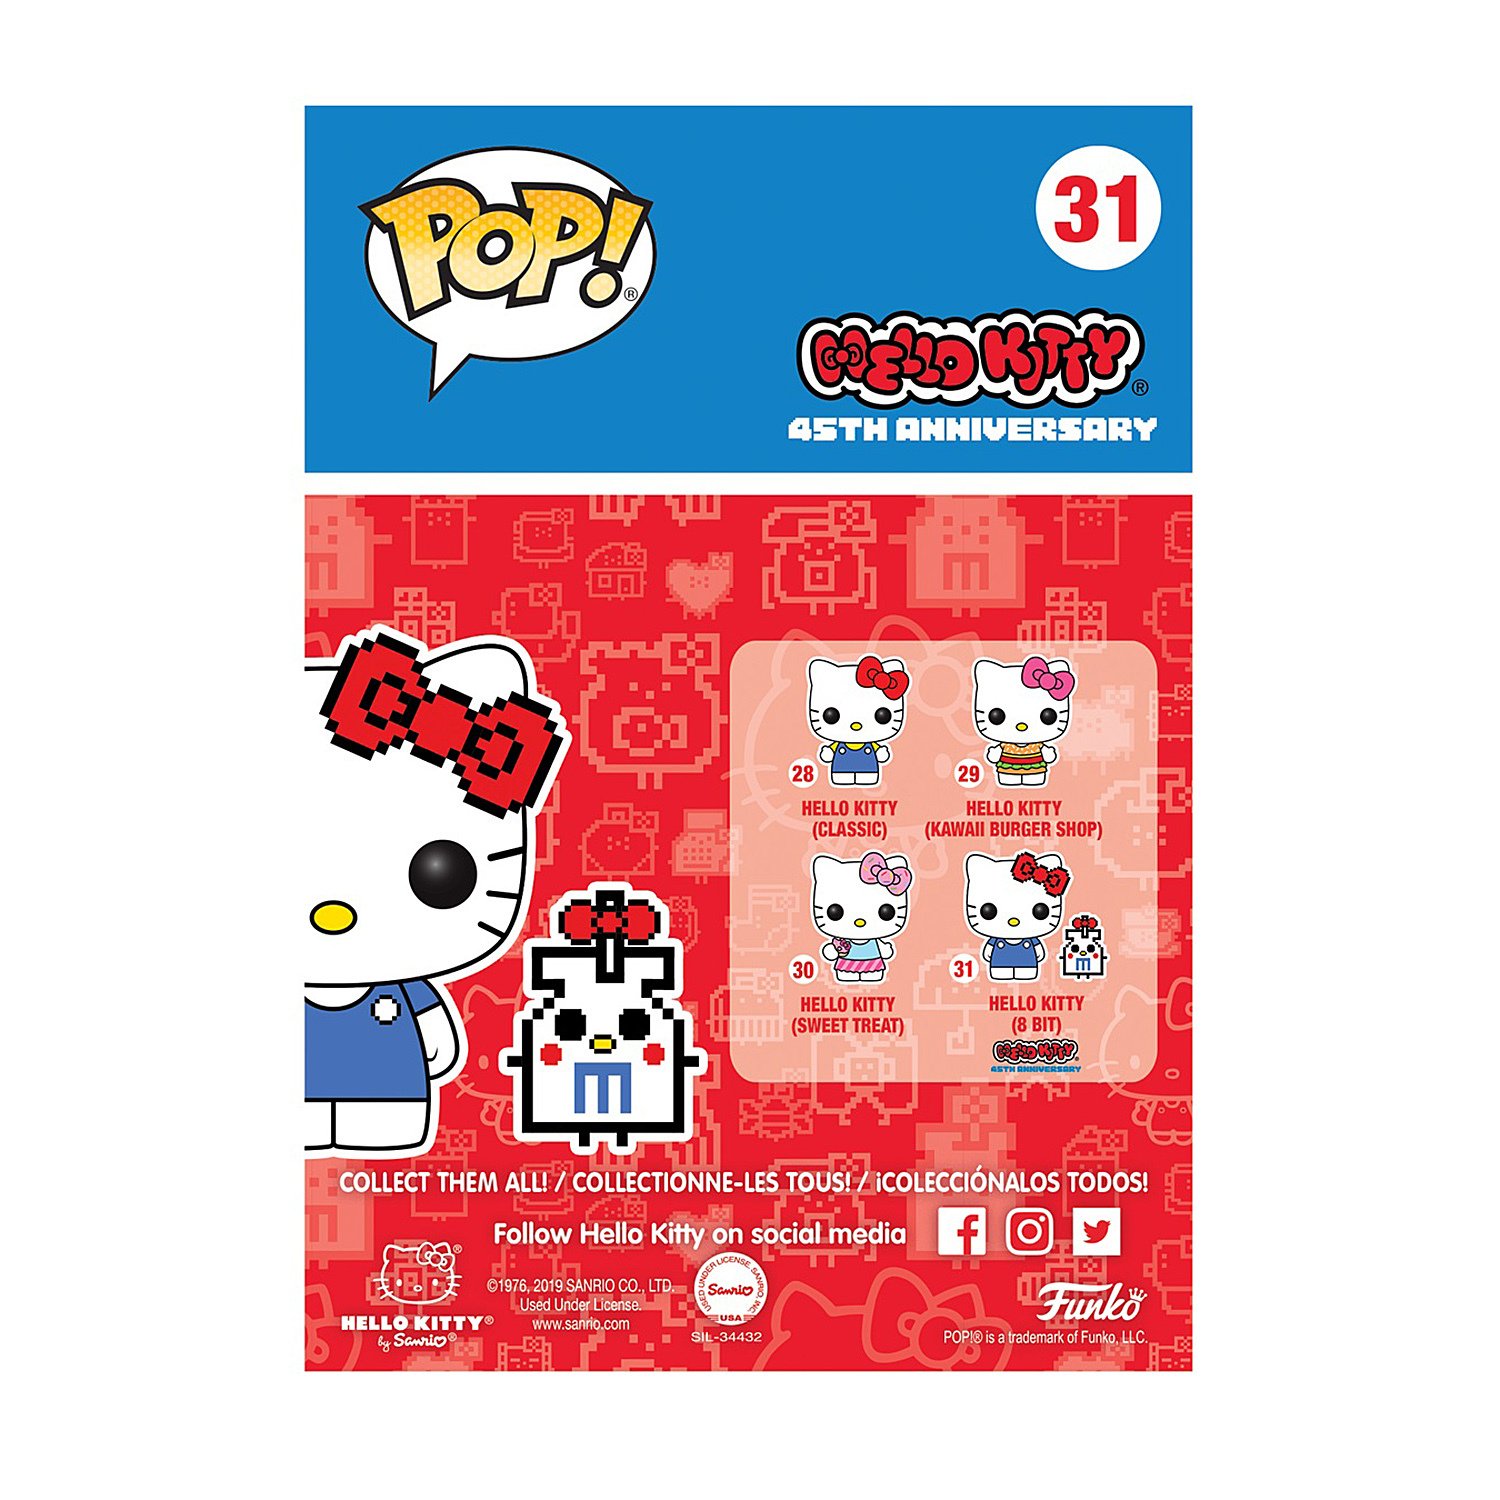 Игрушка Funko Pop Sanrio Hello Kitty Fun2532